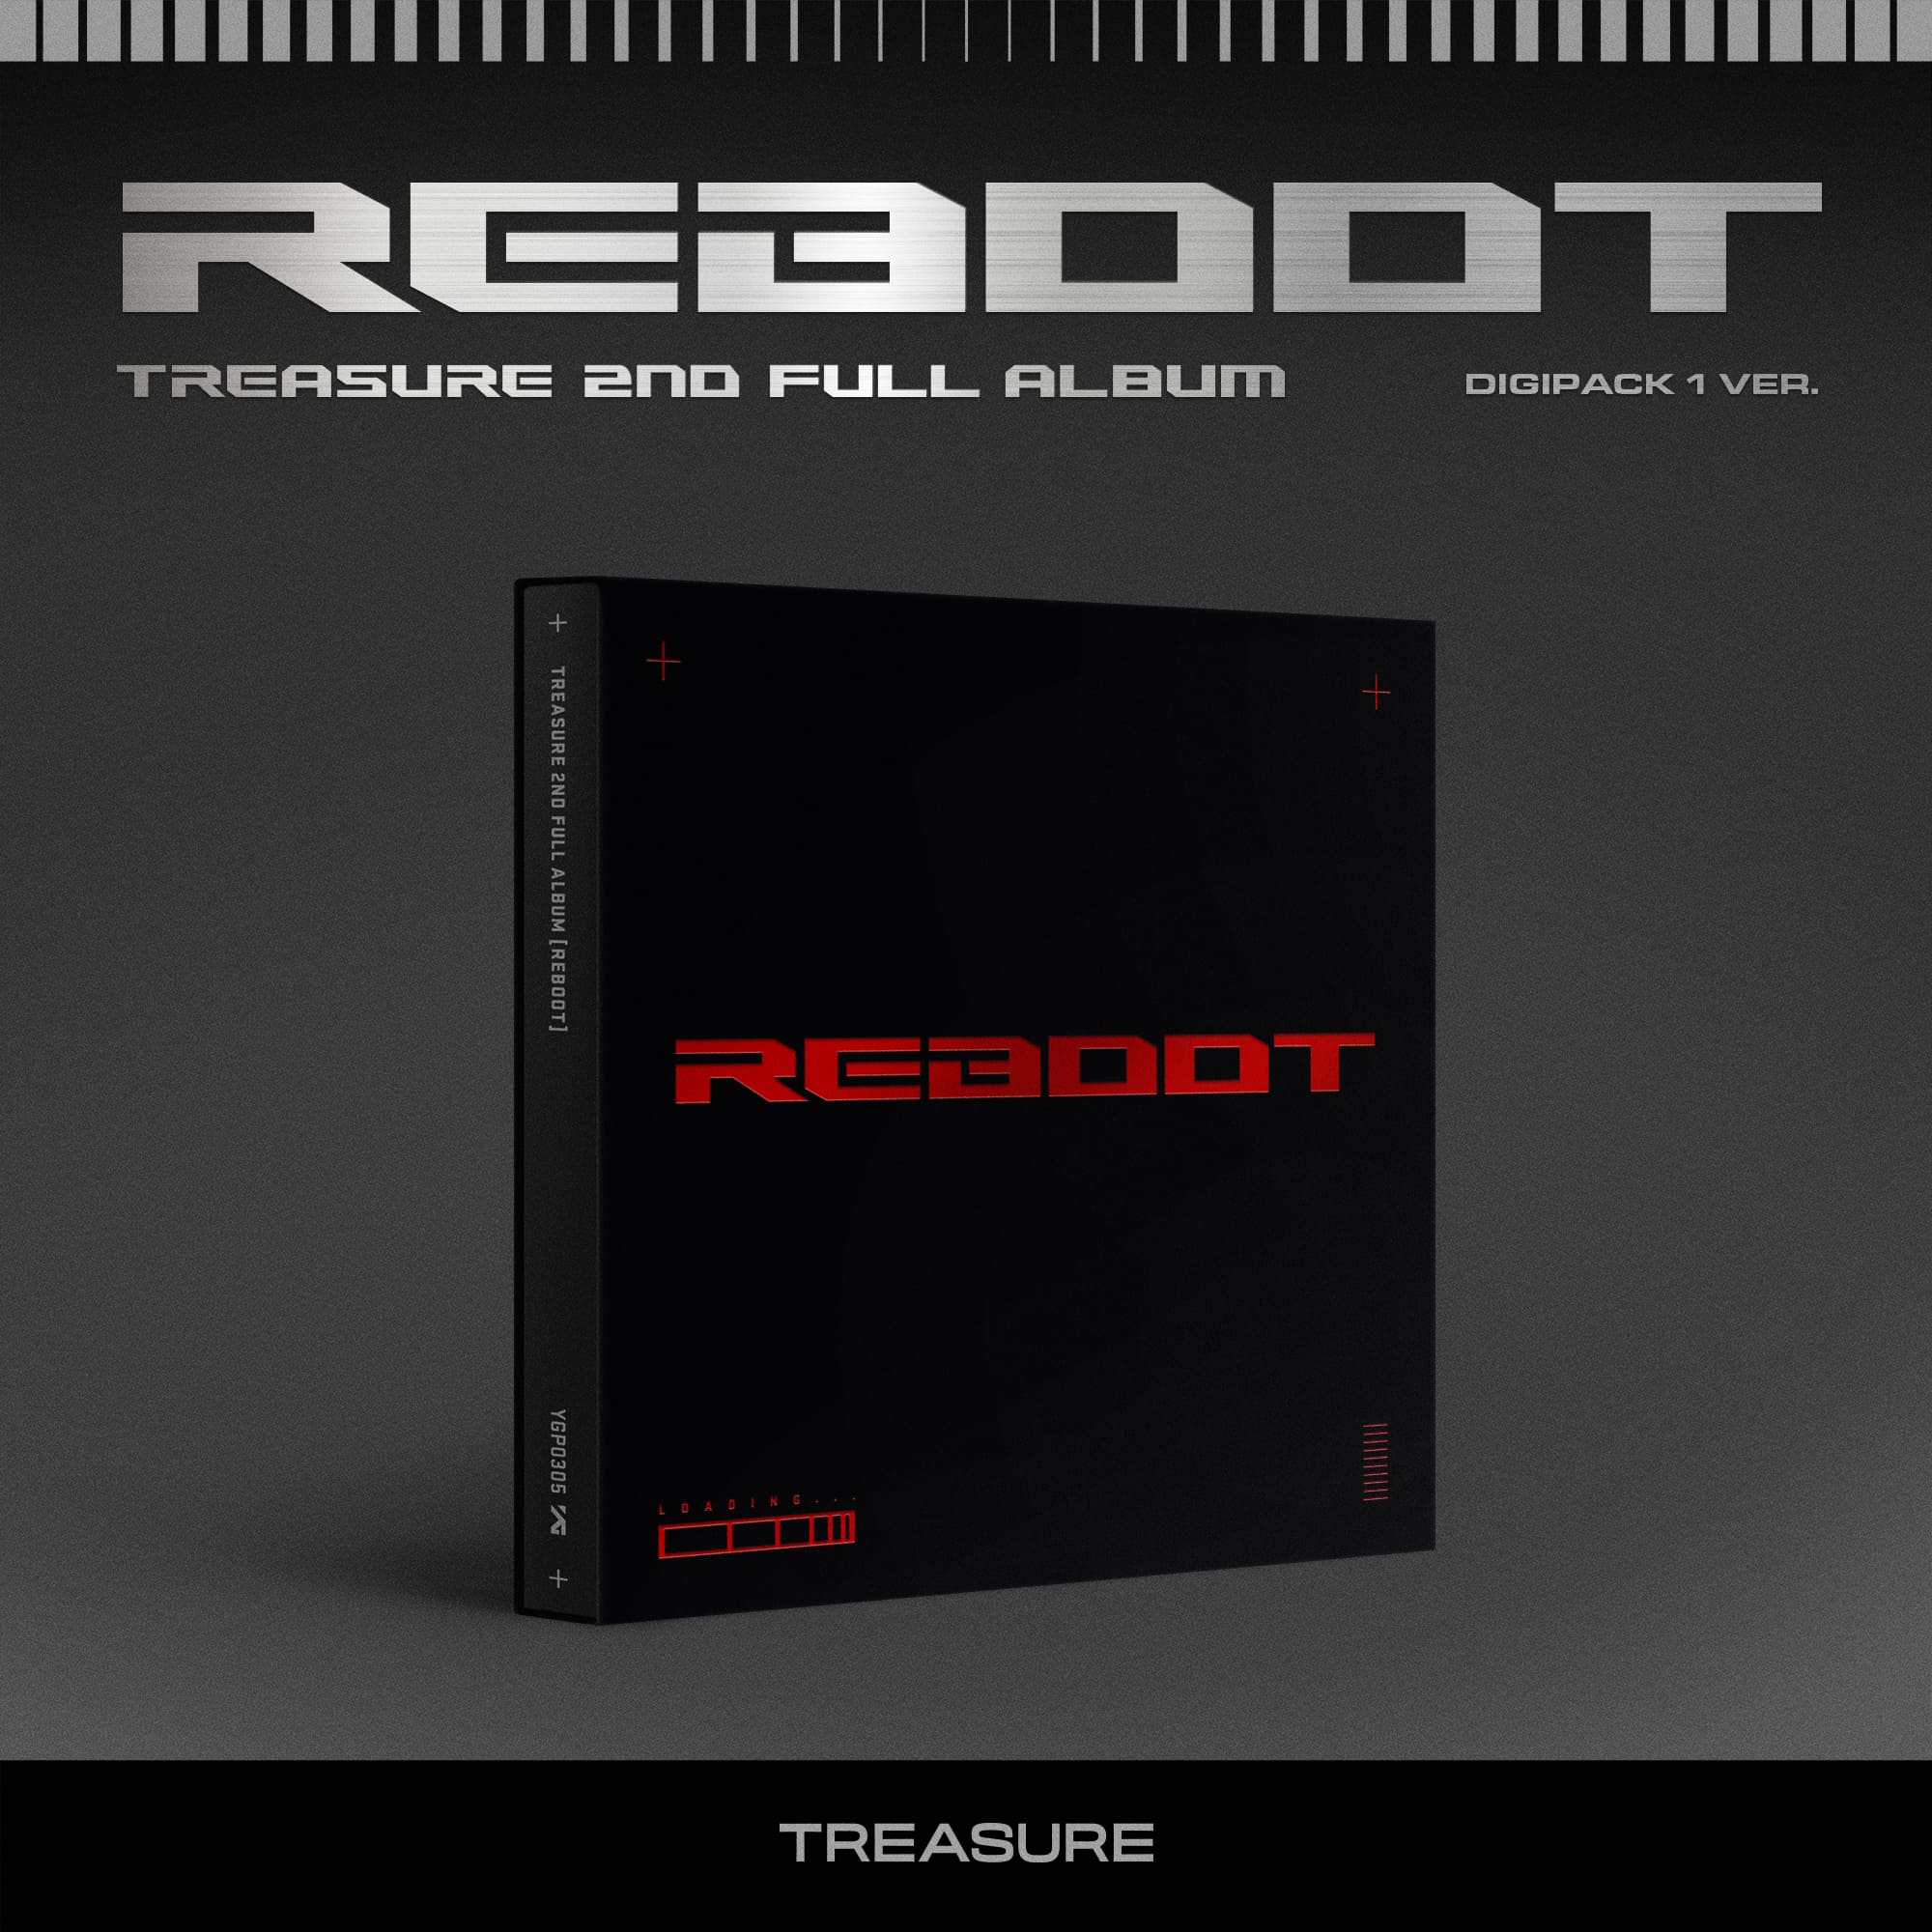 TREASURE 2nd Full Album REBOOT (Digipack Version)